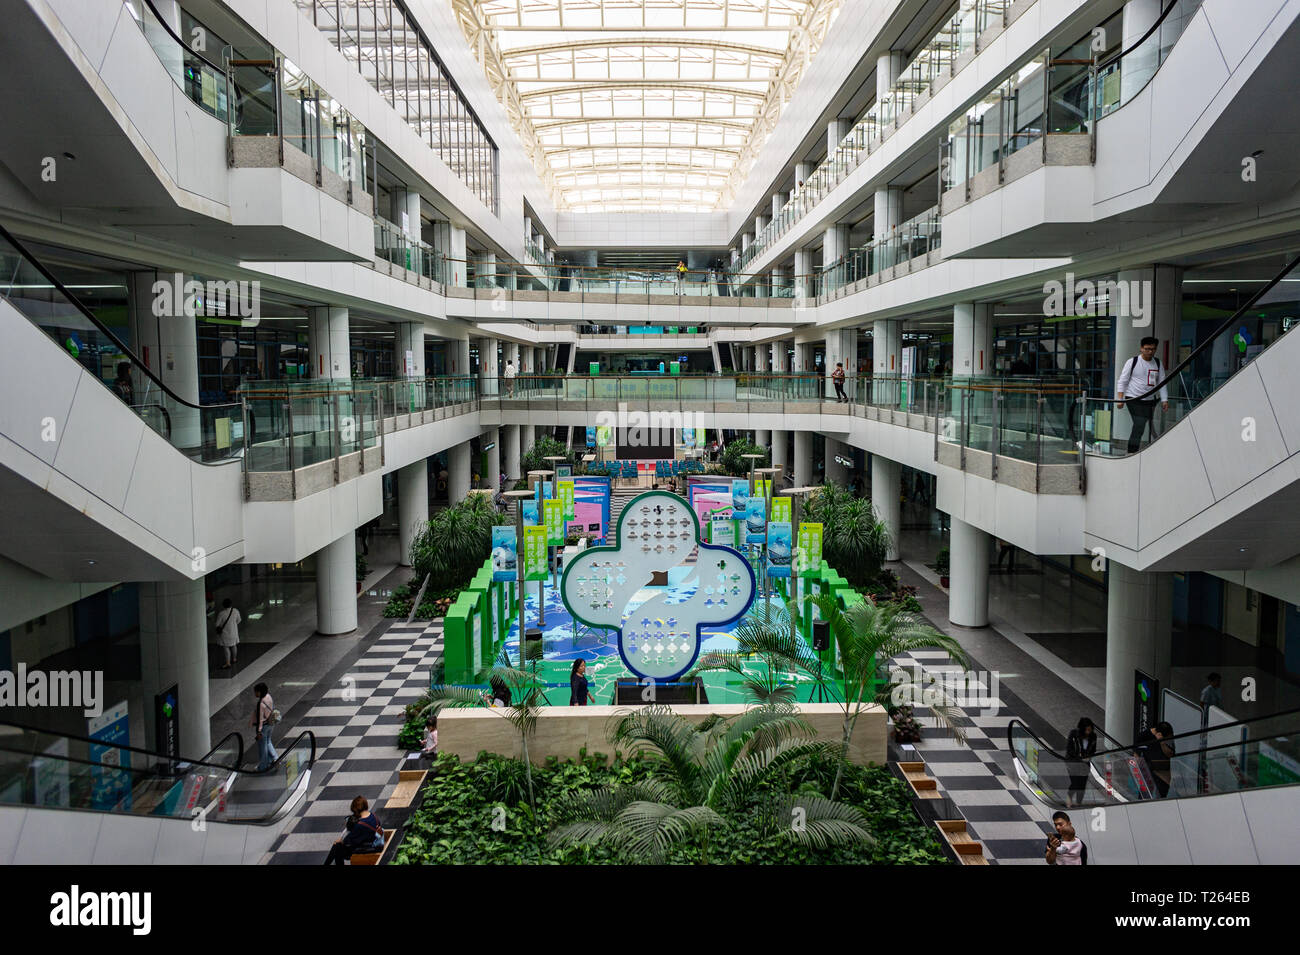 L'intérieur de l'hôpital de grand angle de HKU à Shenzhen Chine Banque D'Images